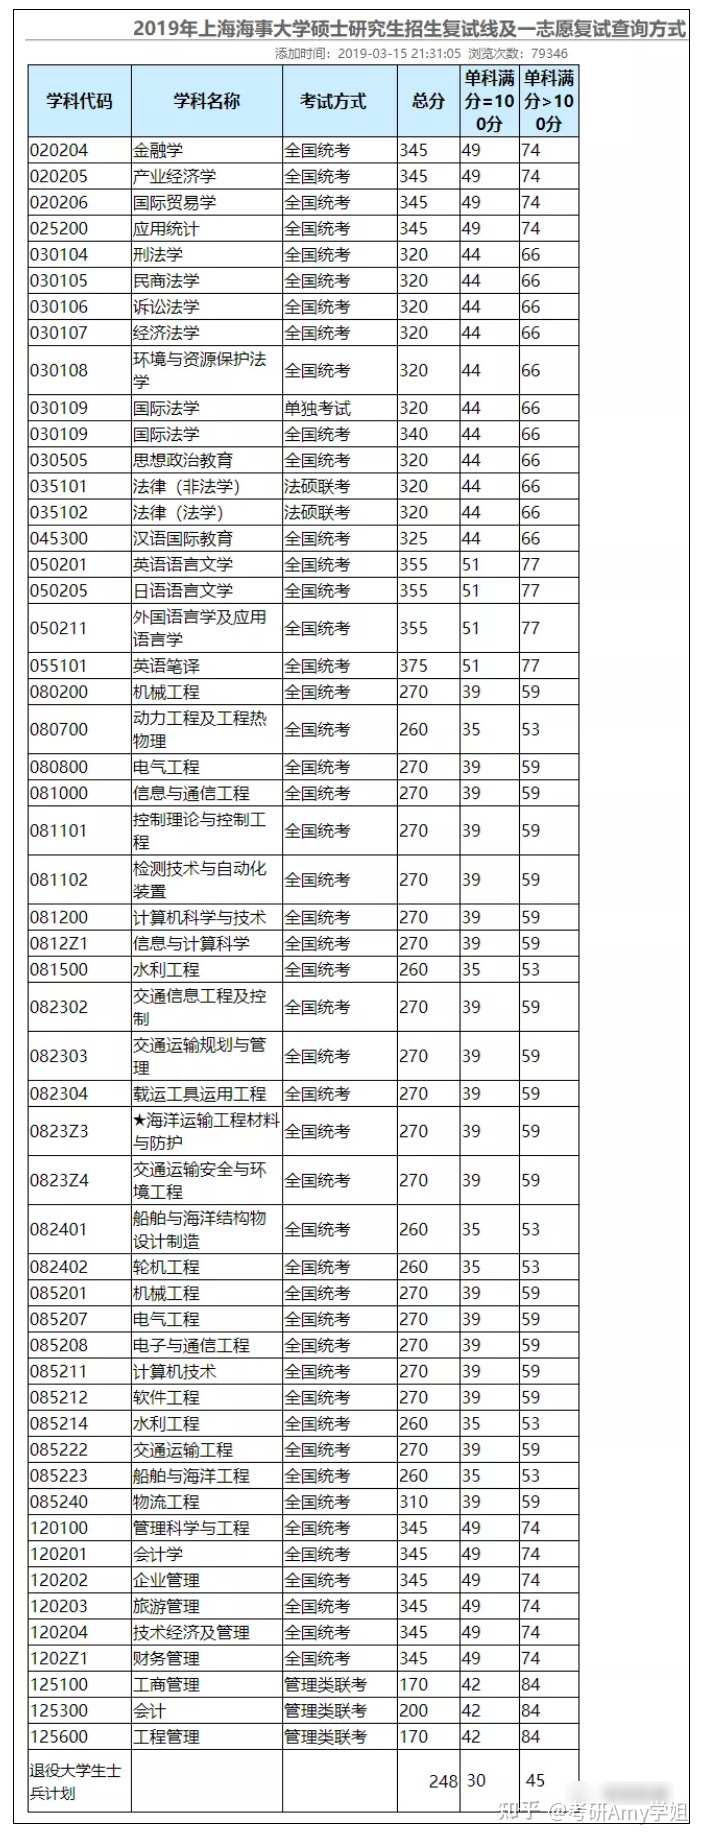 23考研：上海海事大学数据分析及报录比 第5张图片